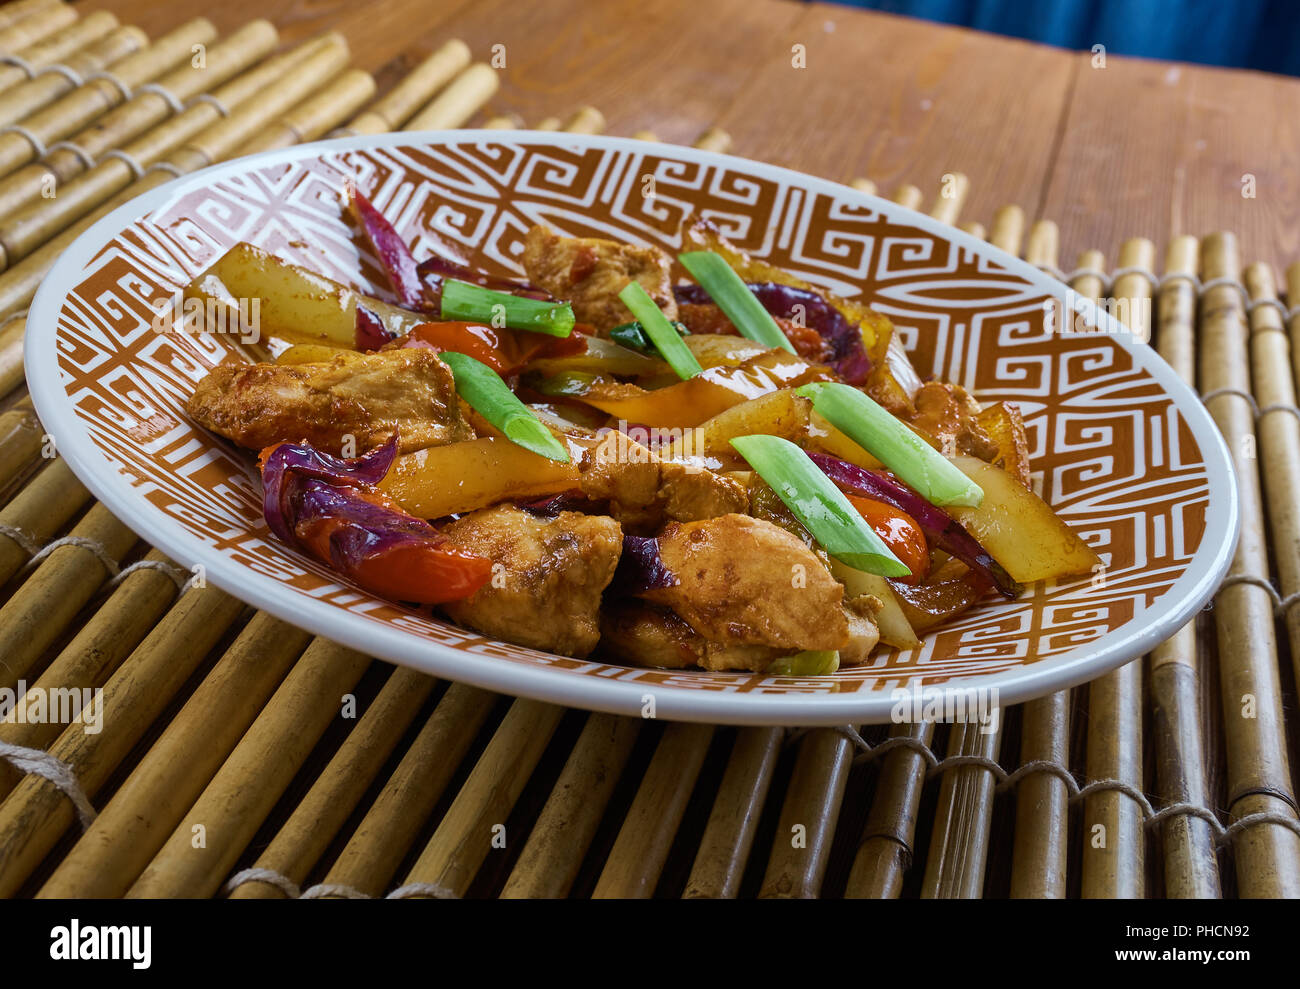 Sauté de poulet et légumes chinois Banque D'Images